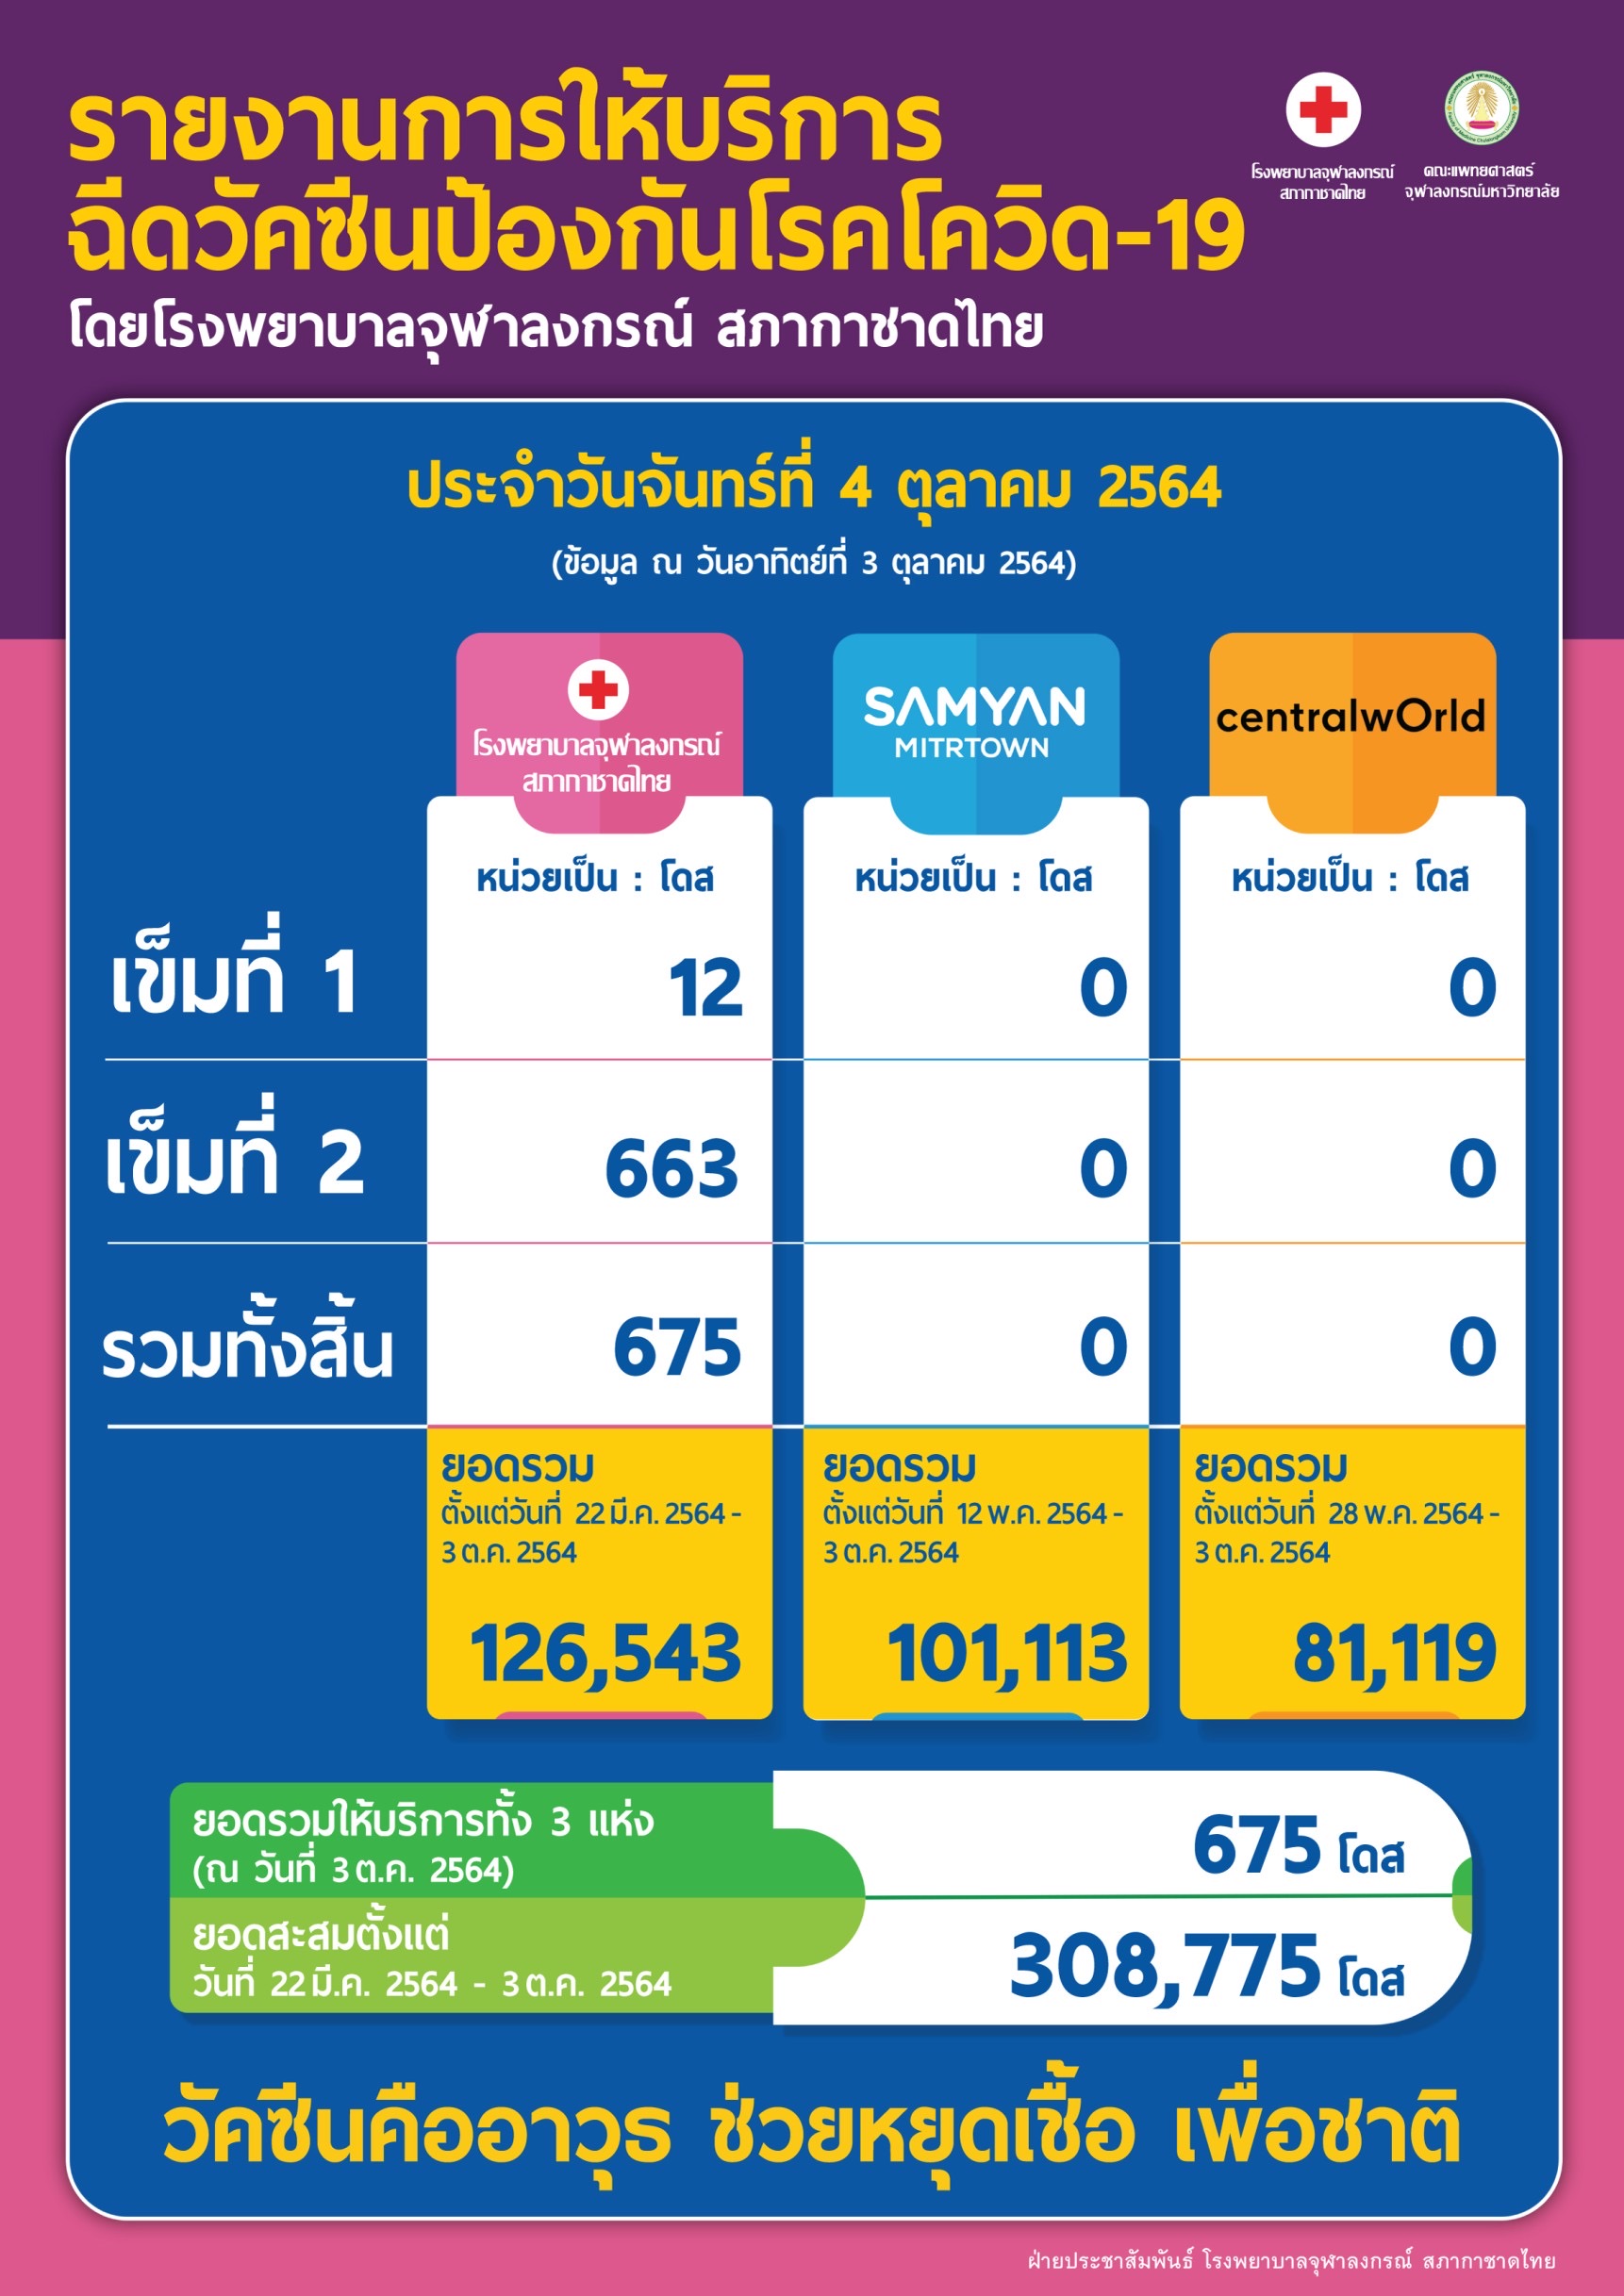 รายงานการให้บริการ ฉีดวัคซีนป้องกันโรคโควิด-19 โดยโรงพยาบาลจุฬาลงกรณ์ สภากาชาดไทย ประจำวันจันทร์ที่ 4 ตุลาคม 2564